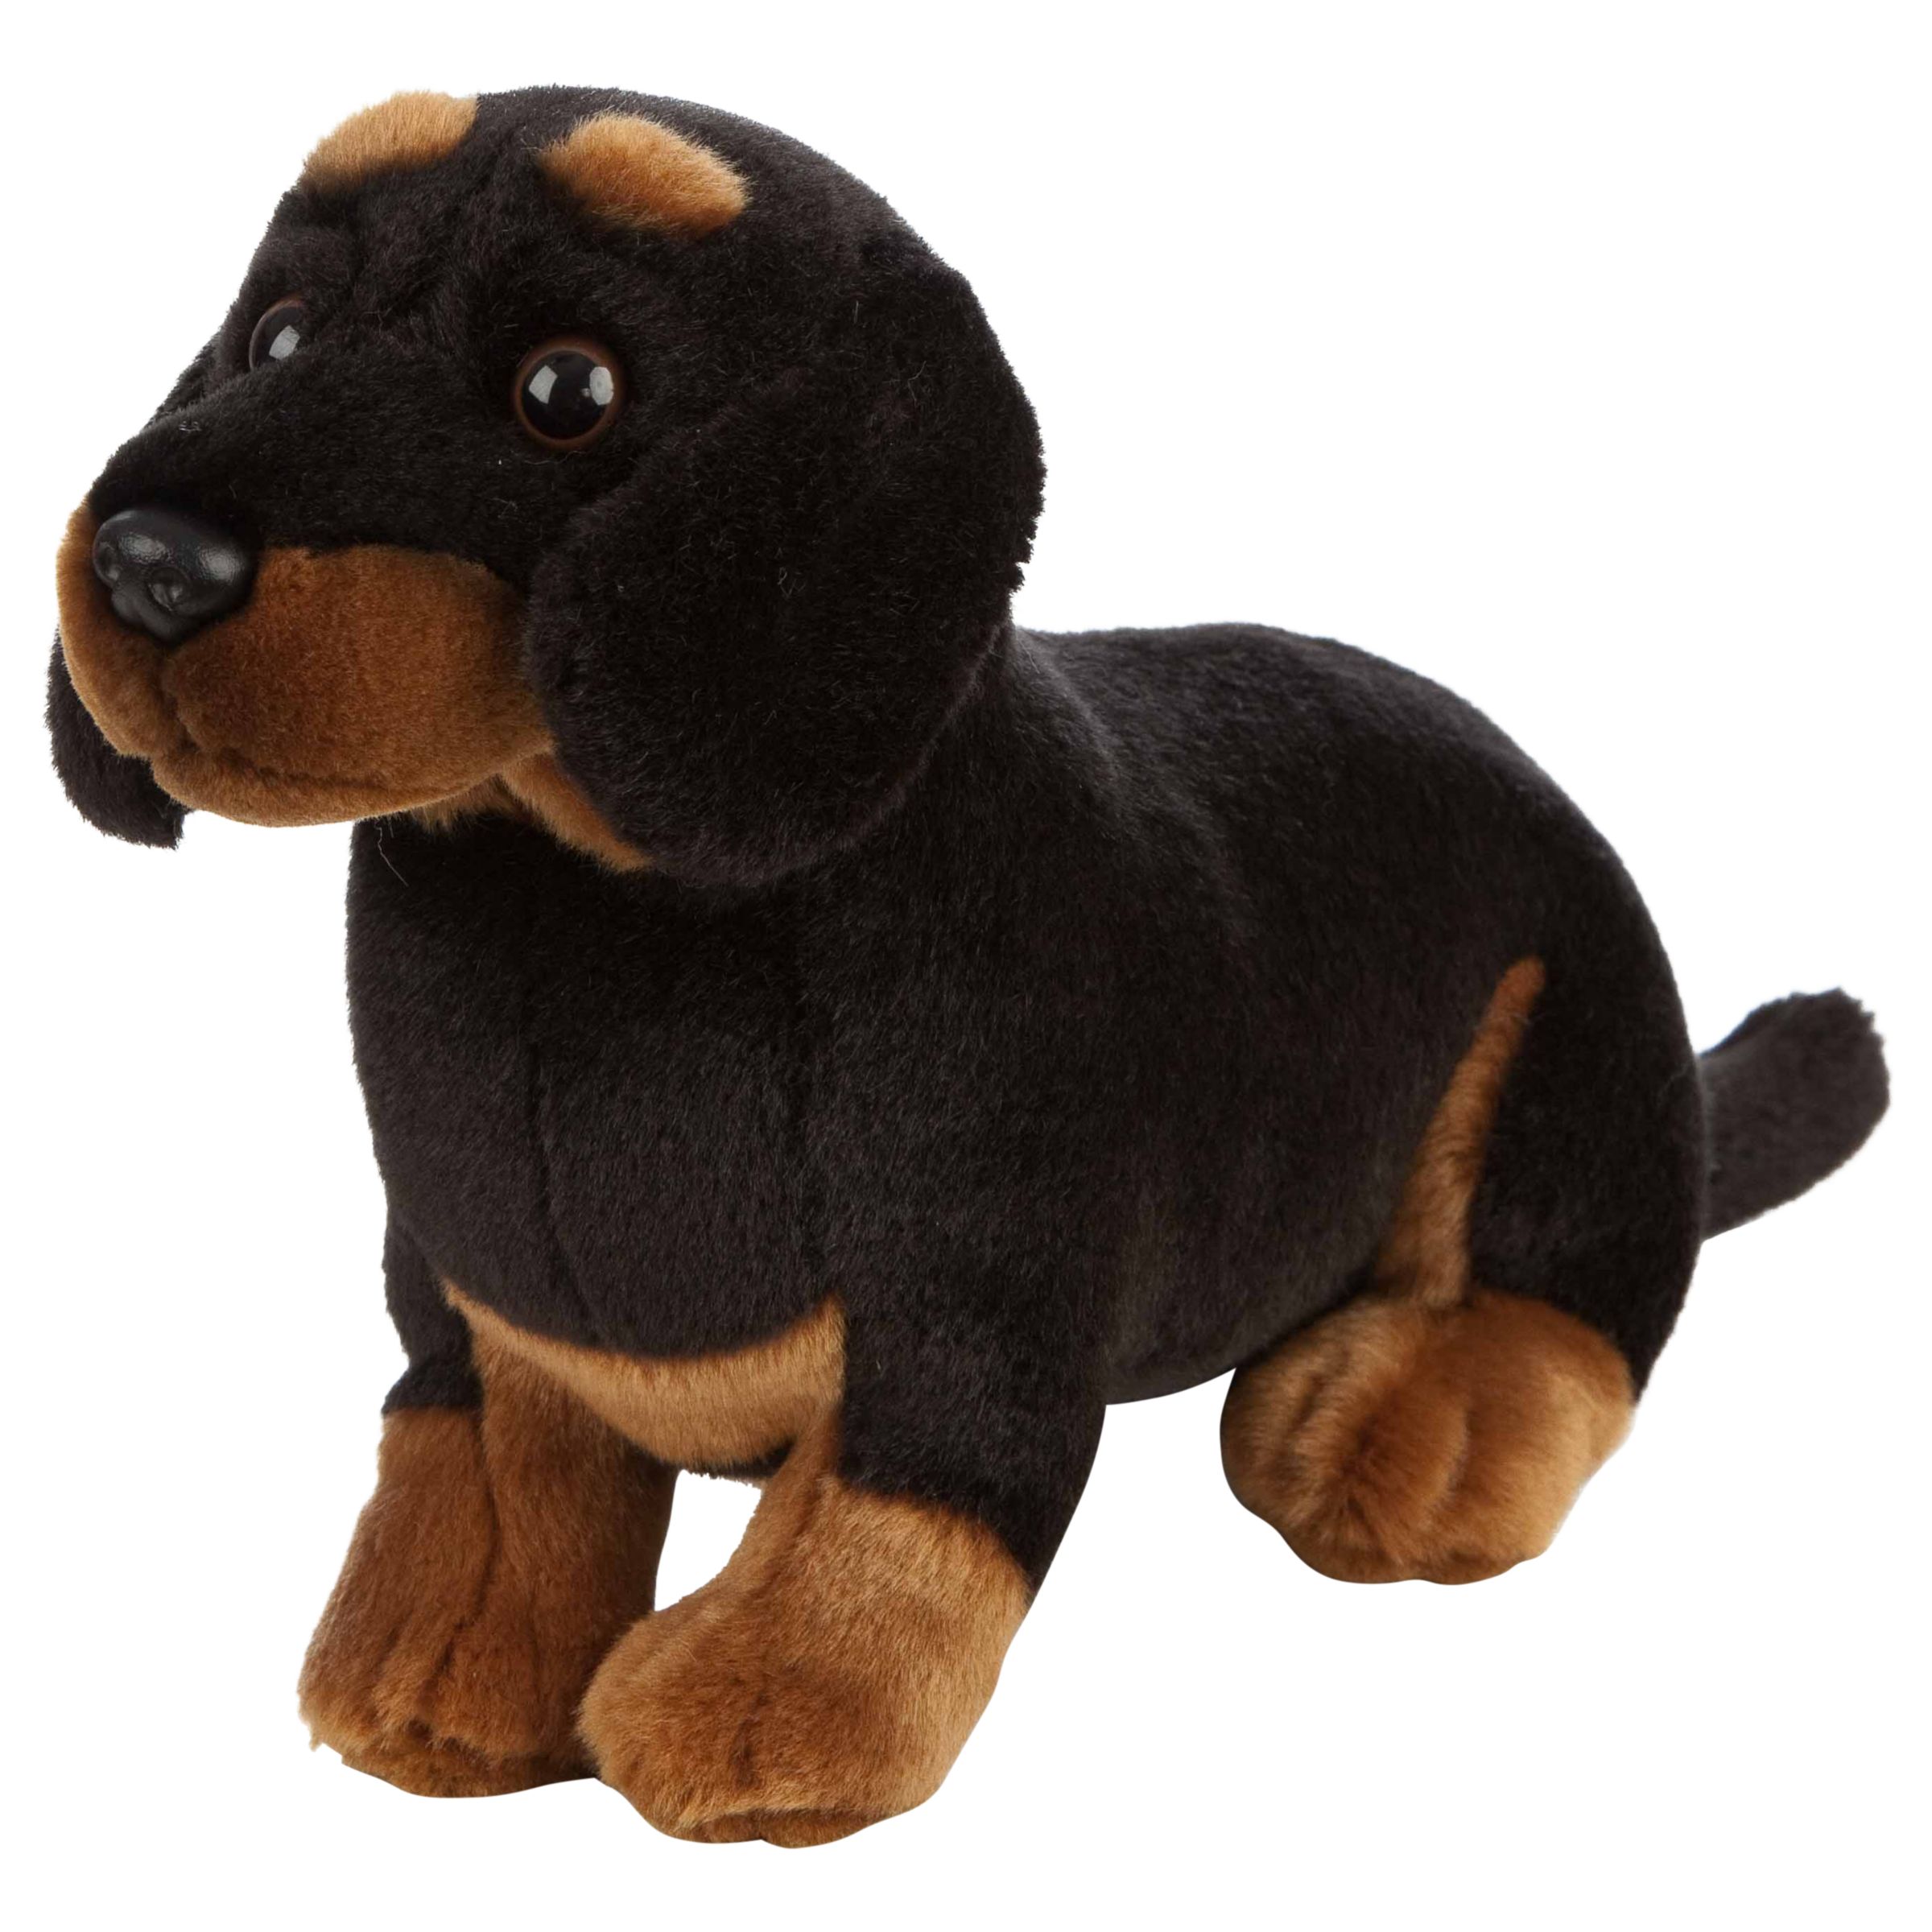 dachshund cuddly toy